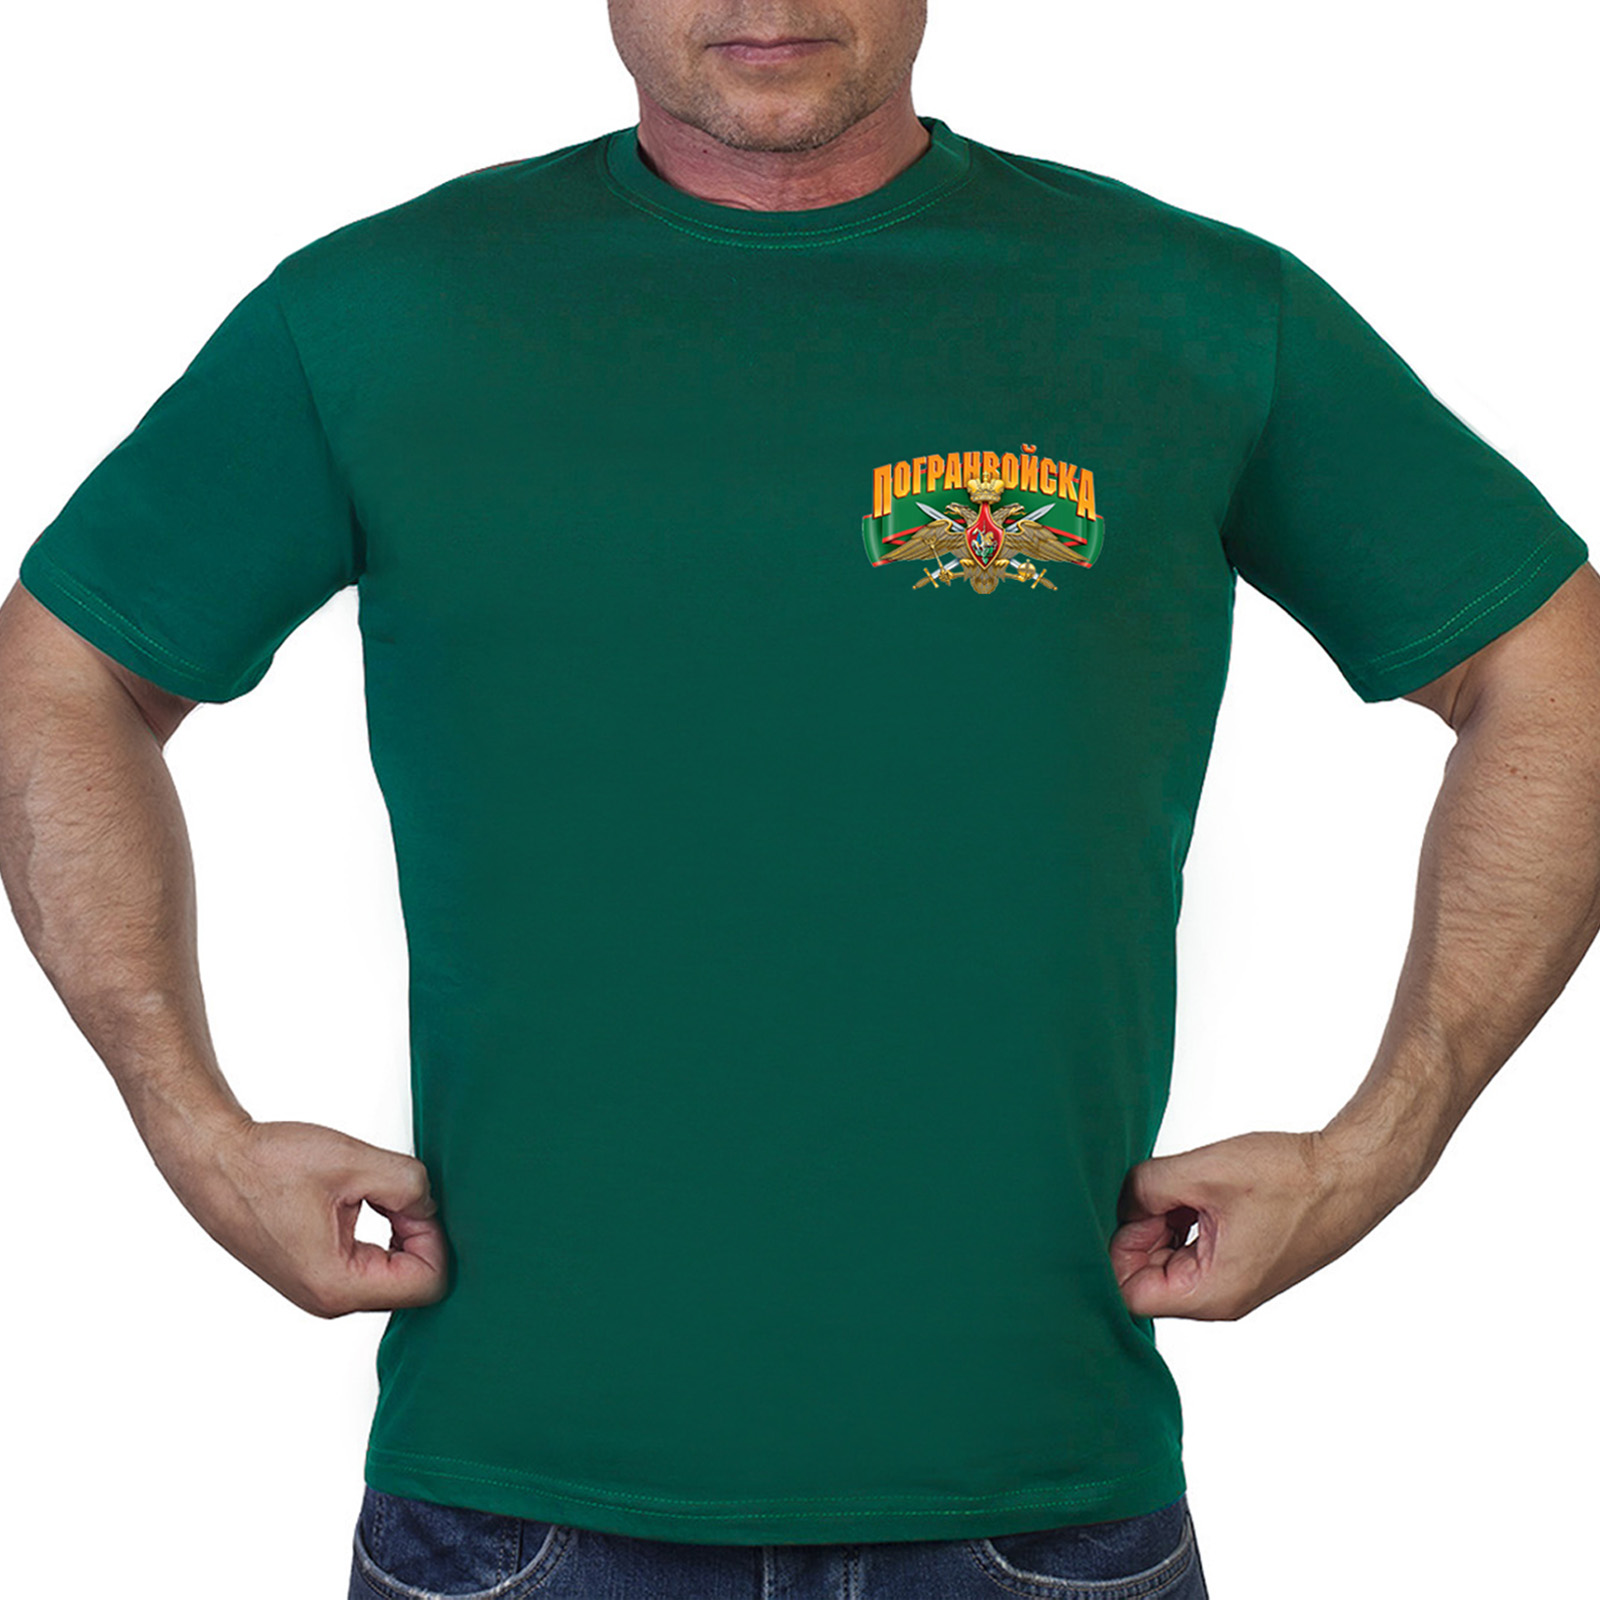 Зелёная мужская футболка с термотрансфером "Погранвойска" - в розницу и оптом